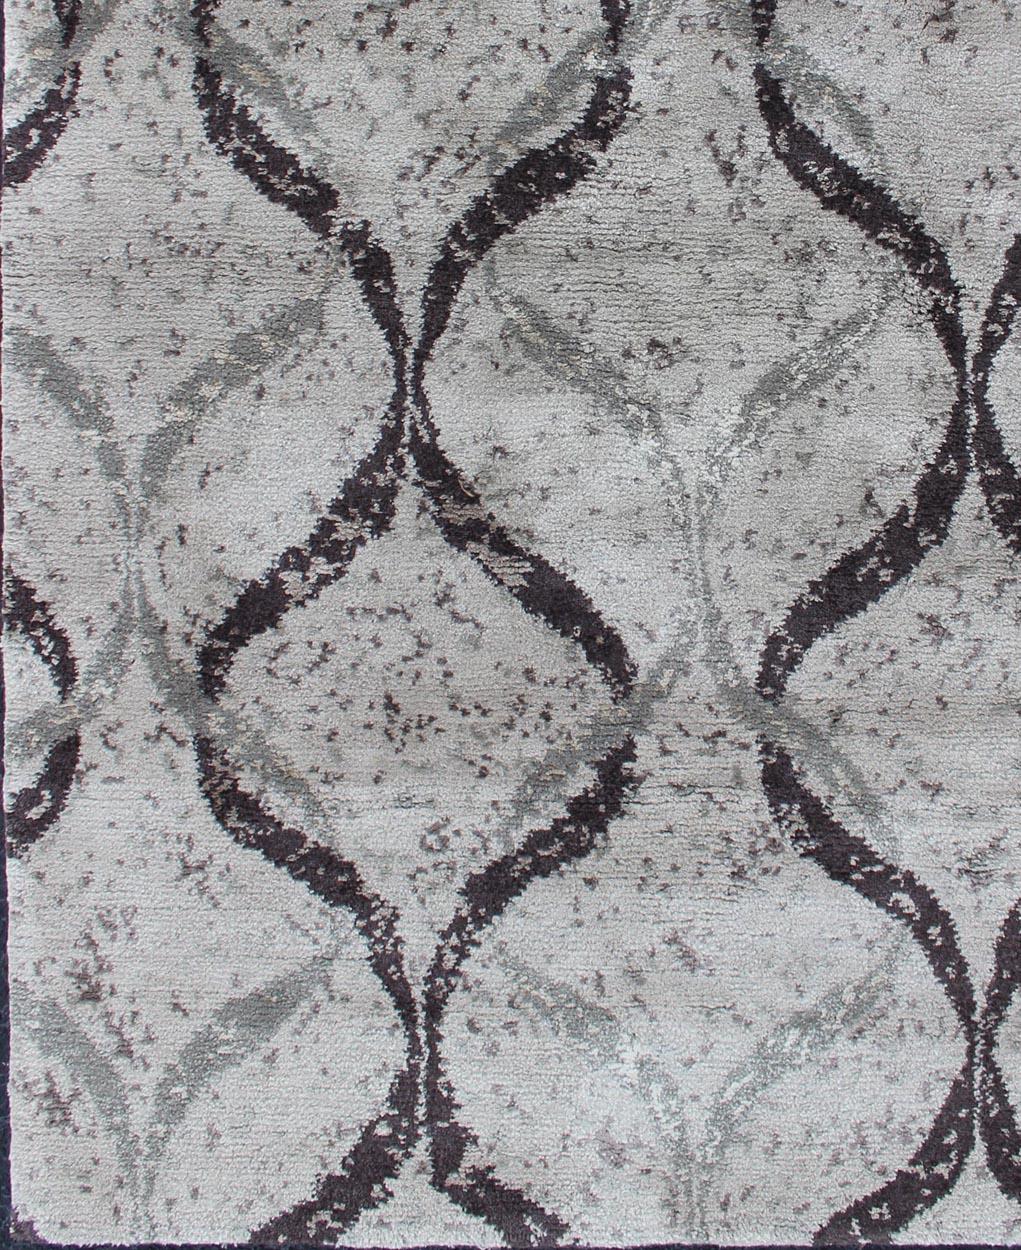  Keivan Woven Arts Moderner nepalesischer Teppich aus Wolle und Seide. Keivan Woven Arts Nepalesischer moderner Teppich in Grautönen, Silber und Onyx Keivan Woven Arts / Teppich 19-0836, Herkunftsland / Typ: Nepal / modern

Maße: 4'1 x 6'.

Dieser